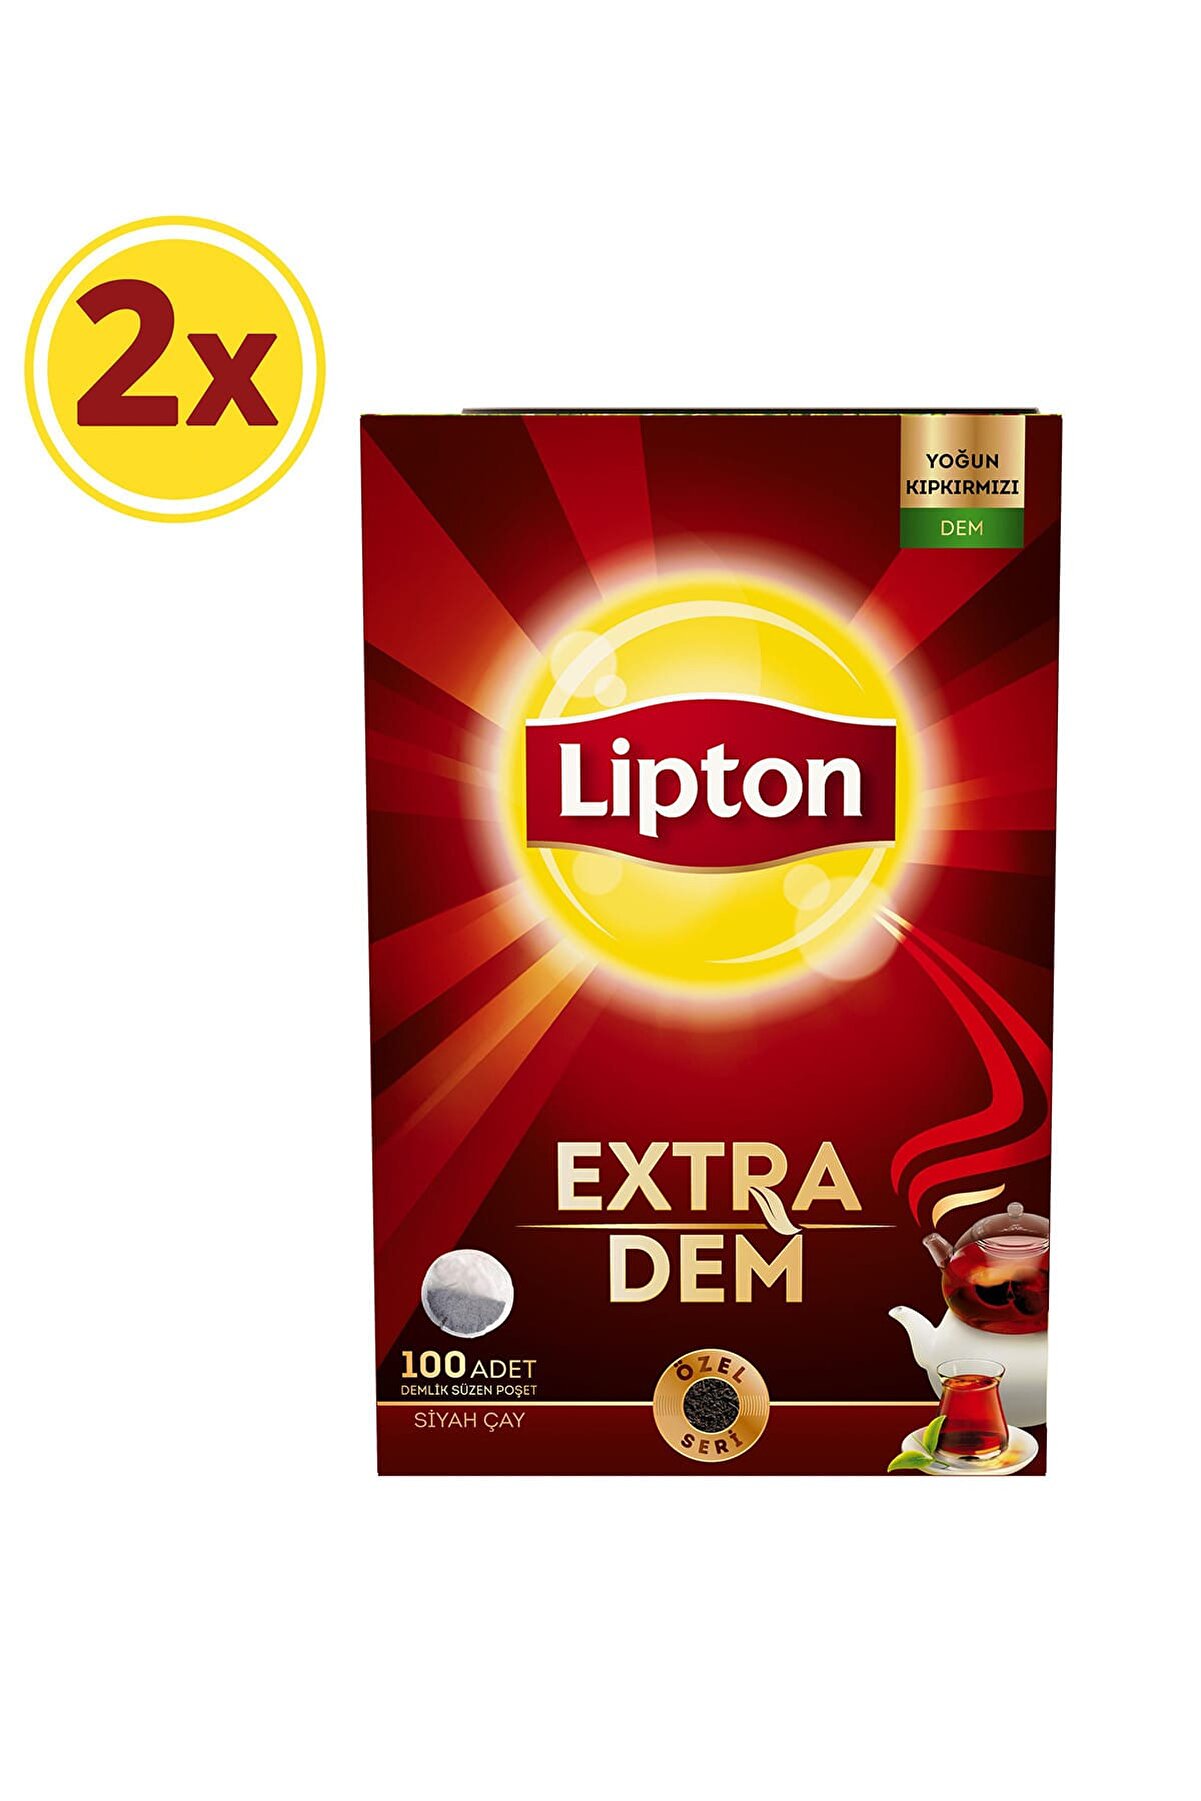 Lipton Extra Dem Demlik Poşet Çay 100'lü x 2 Adet